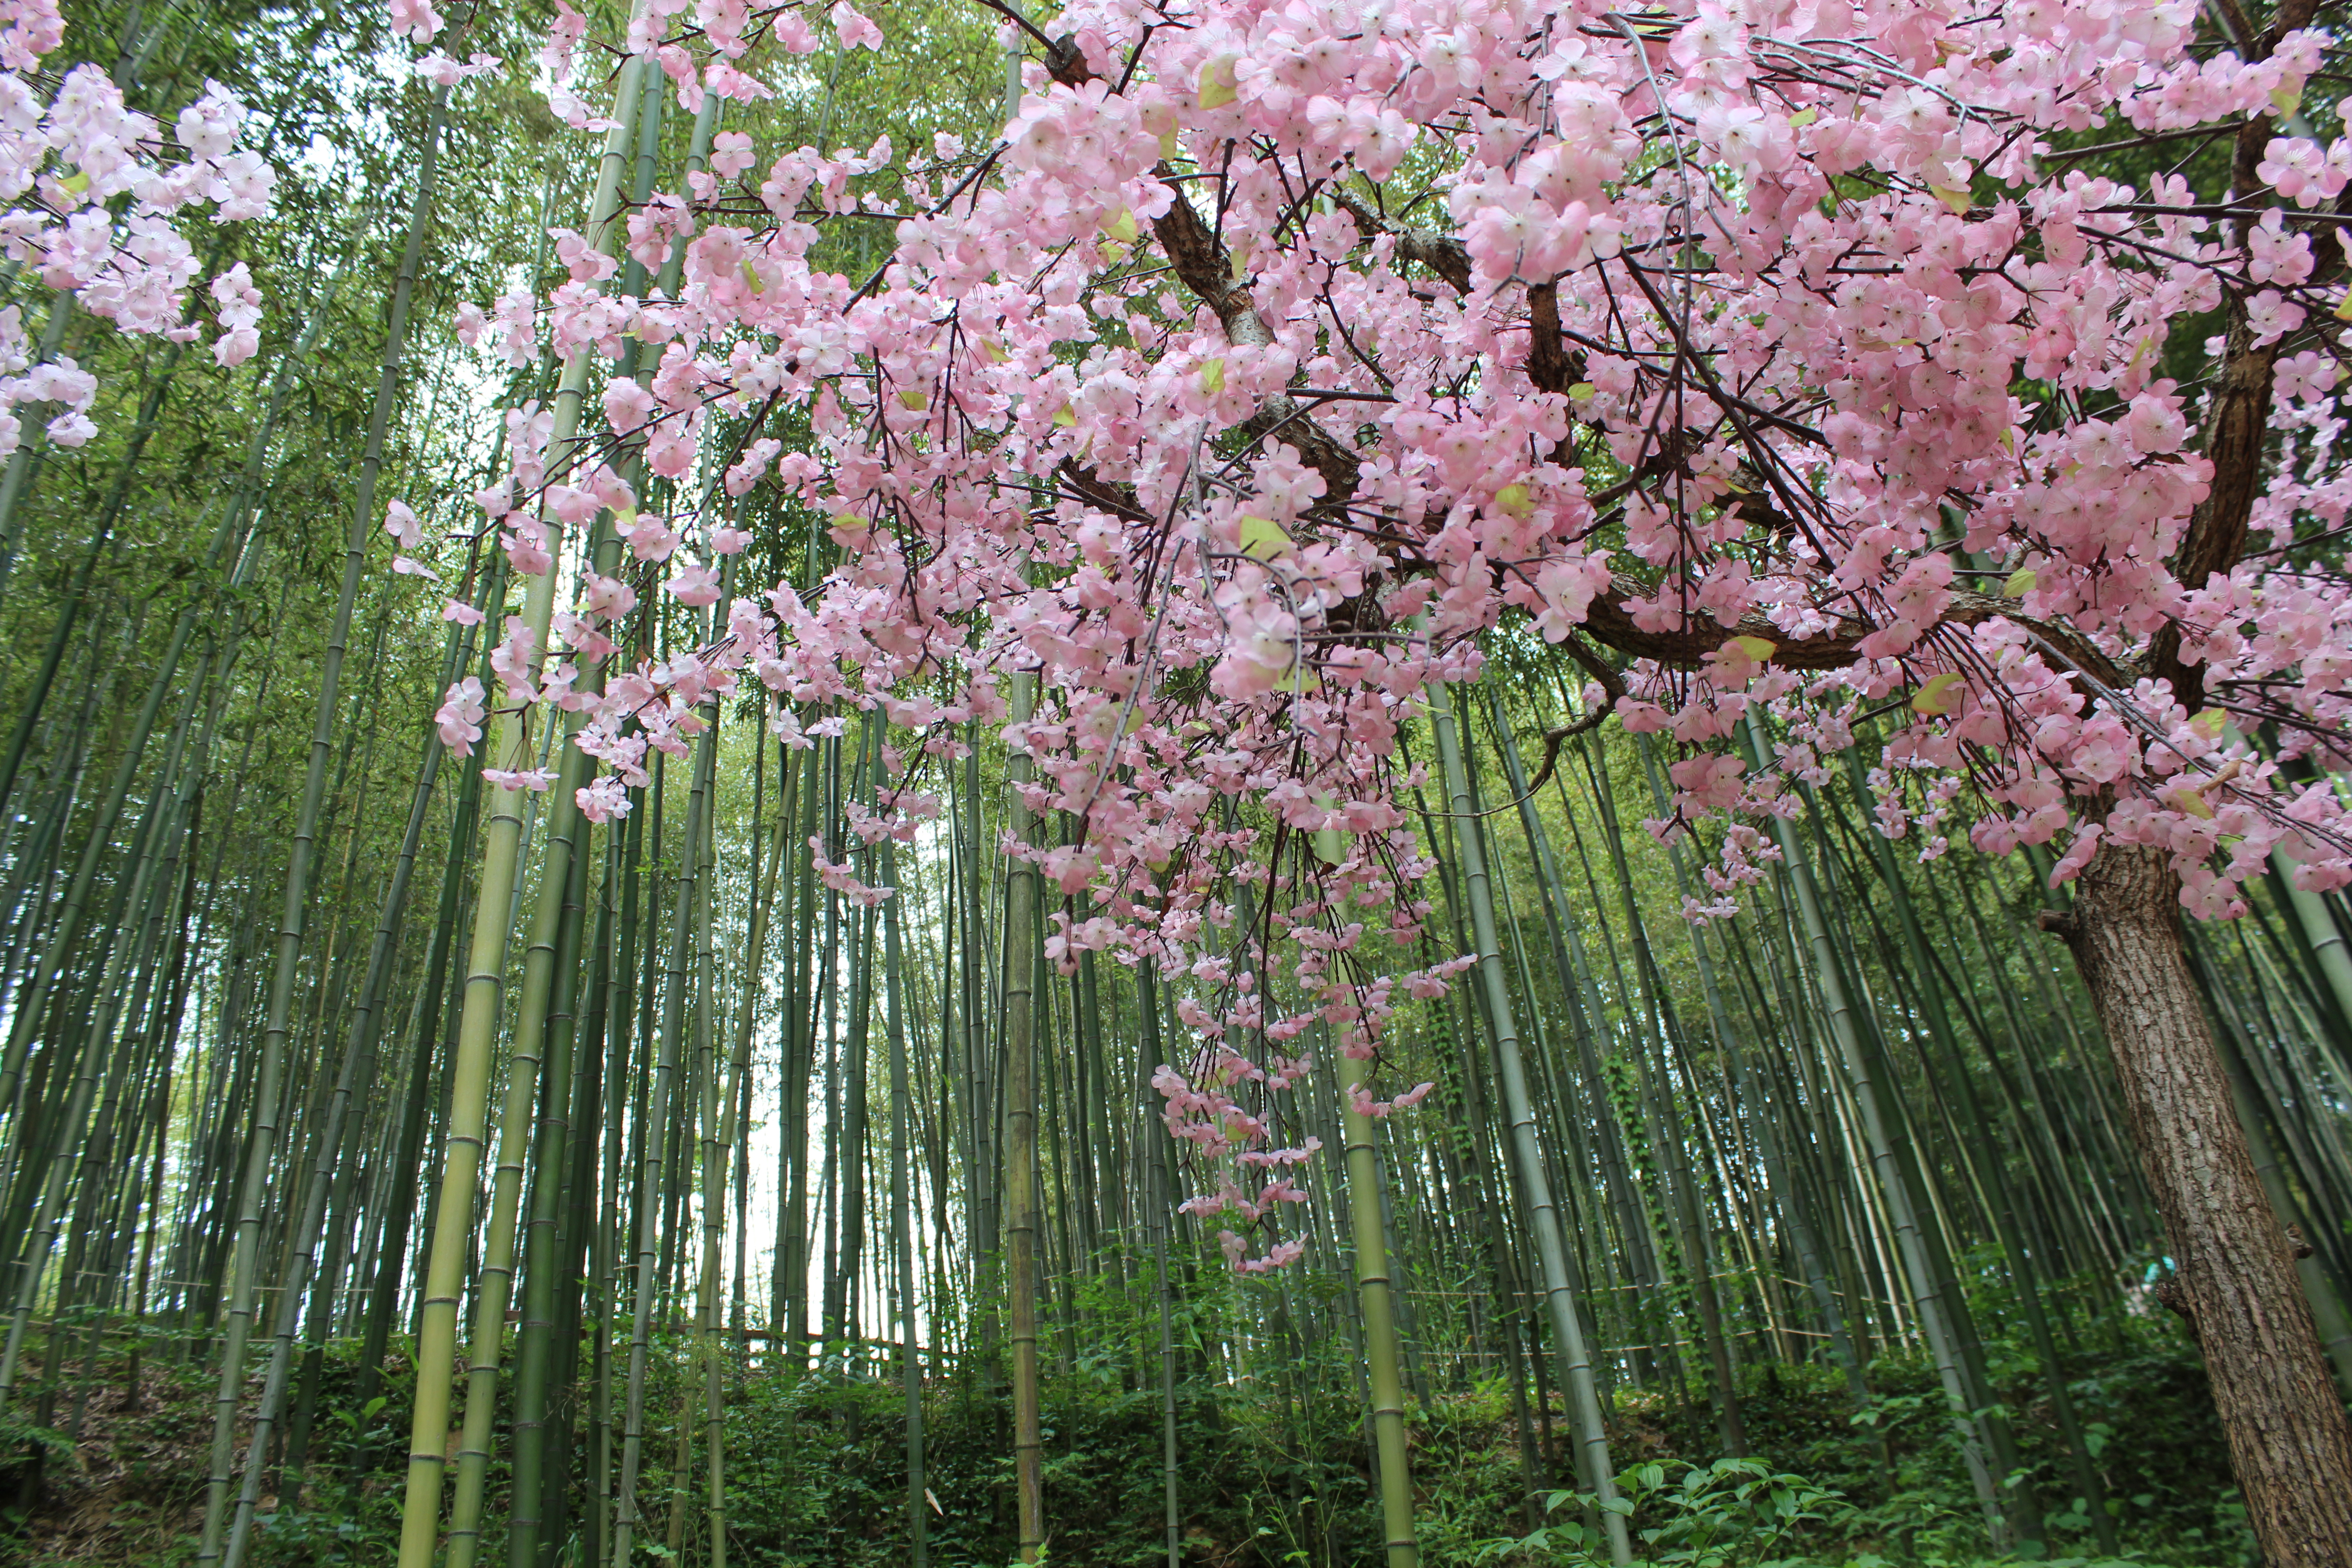 Jadwal Mekarnya Bunga Sakura di Korea Selatan - Skyscanner ...